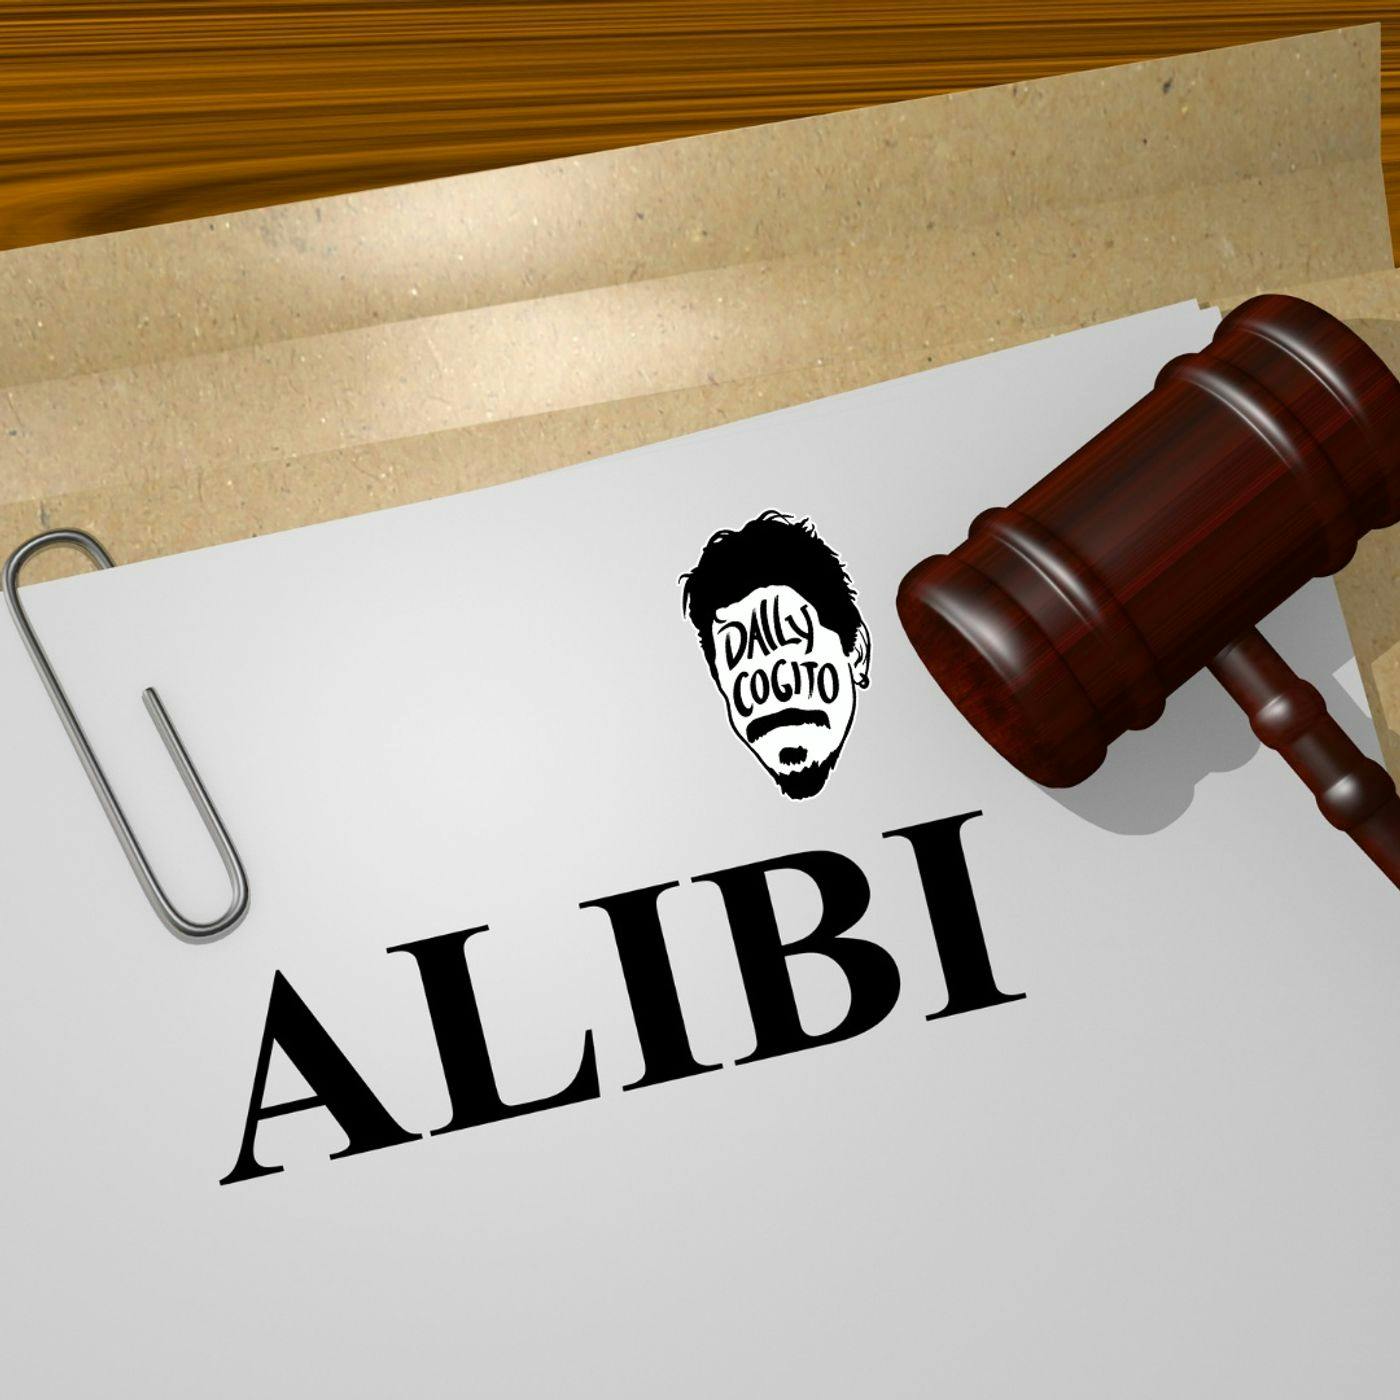 Smettila di cercare Alibi: auto-indulgenza, severità e obiettivi